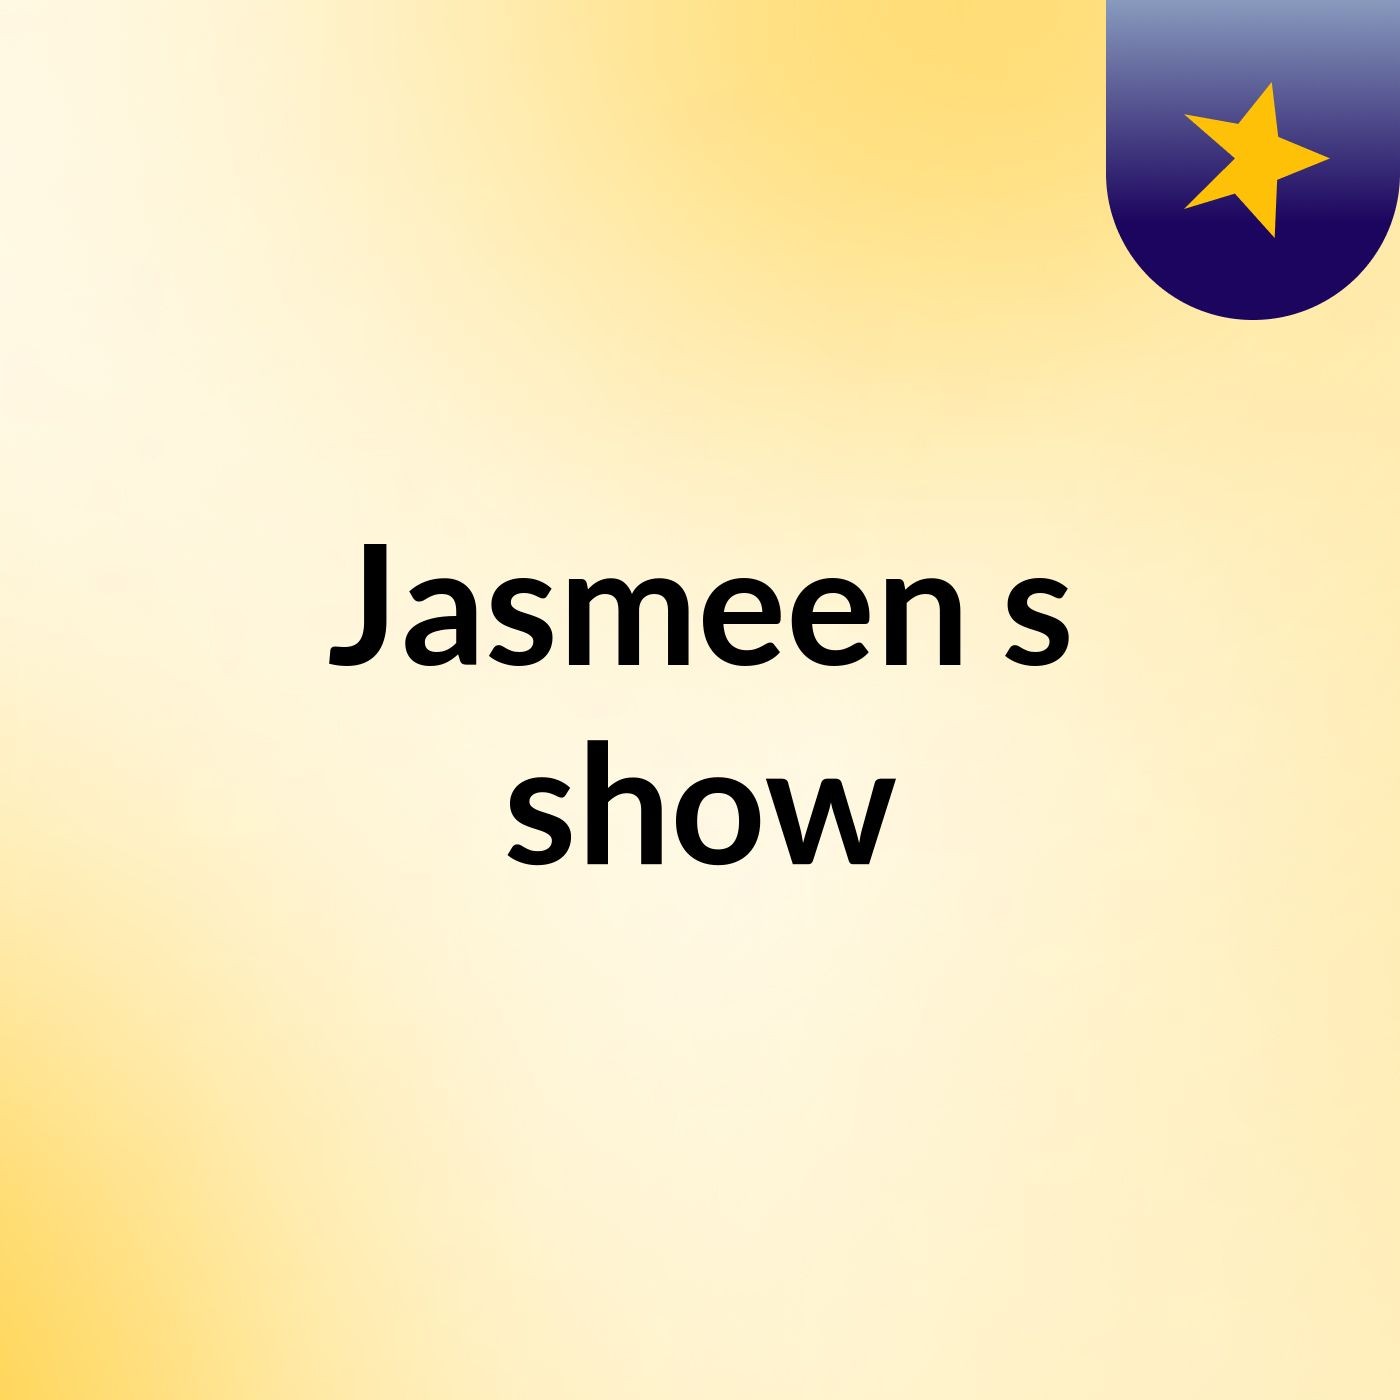 Jasmeen's show